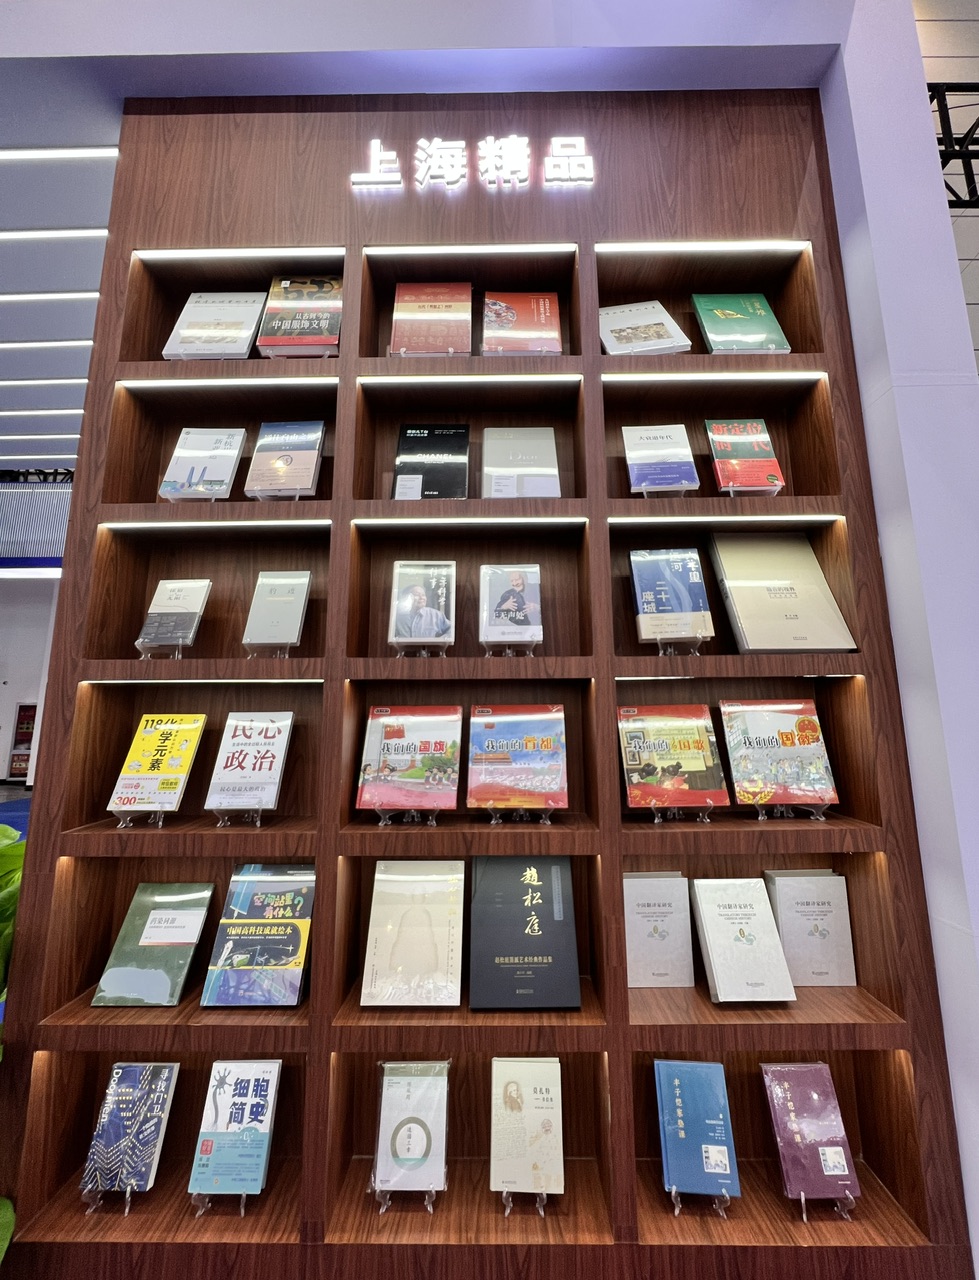 上海代表团亮相全国图书交易博览会,有书有展有咖啡社会主义|展区|图书